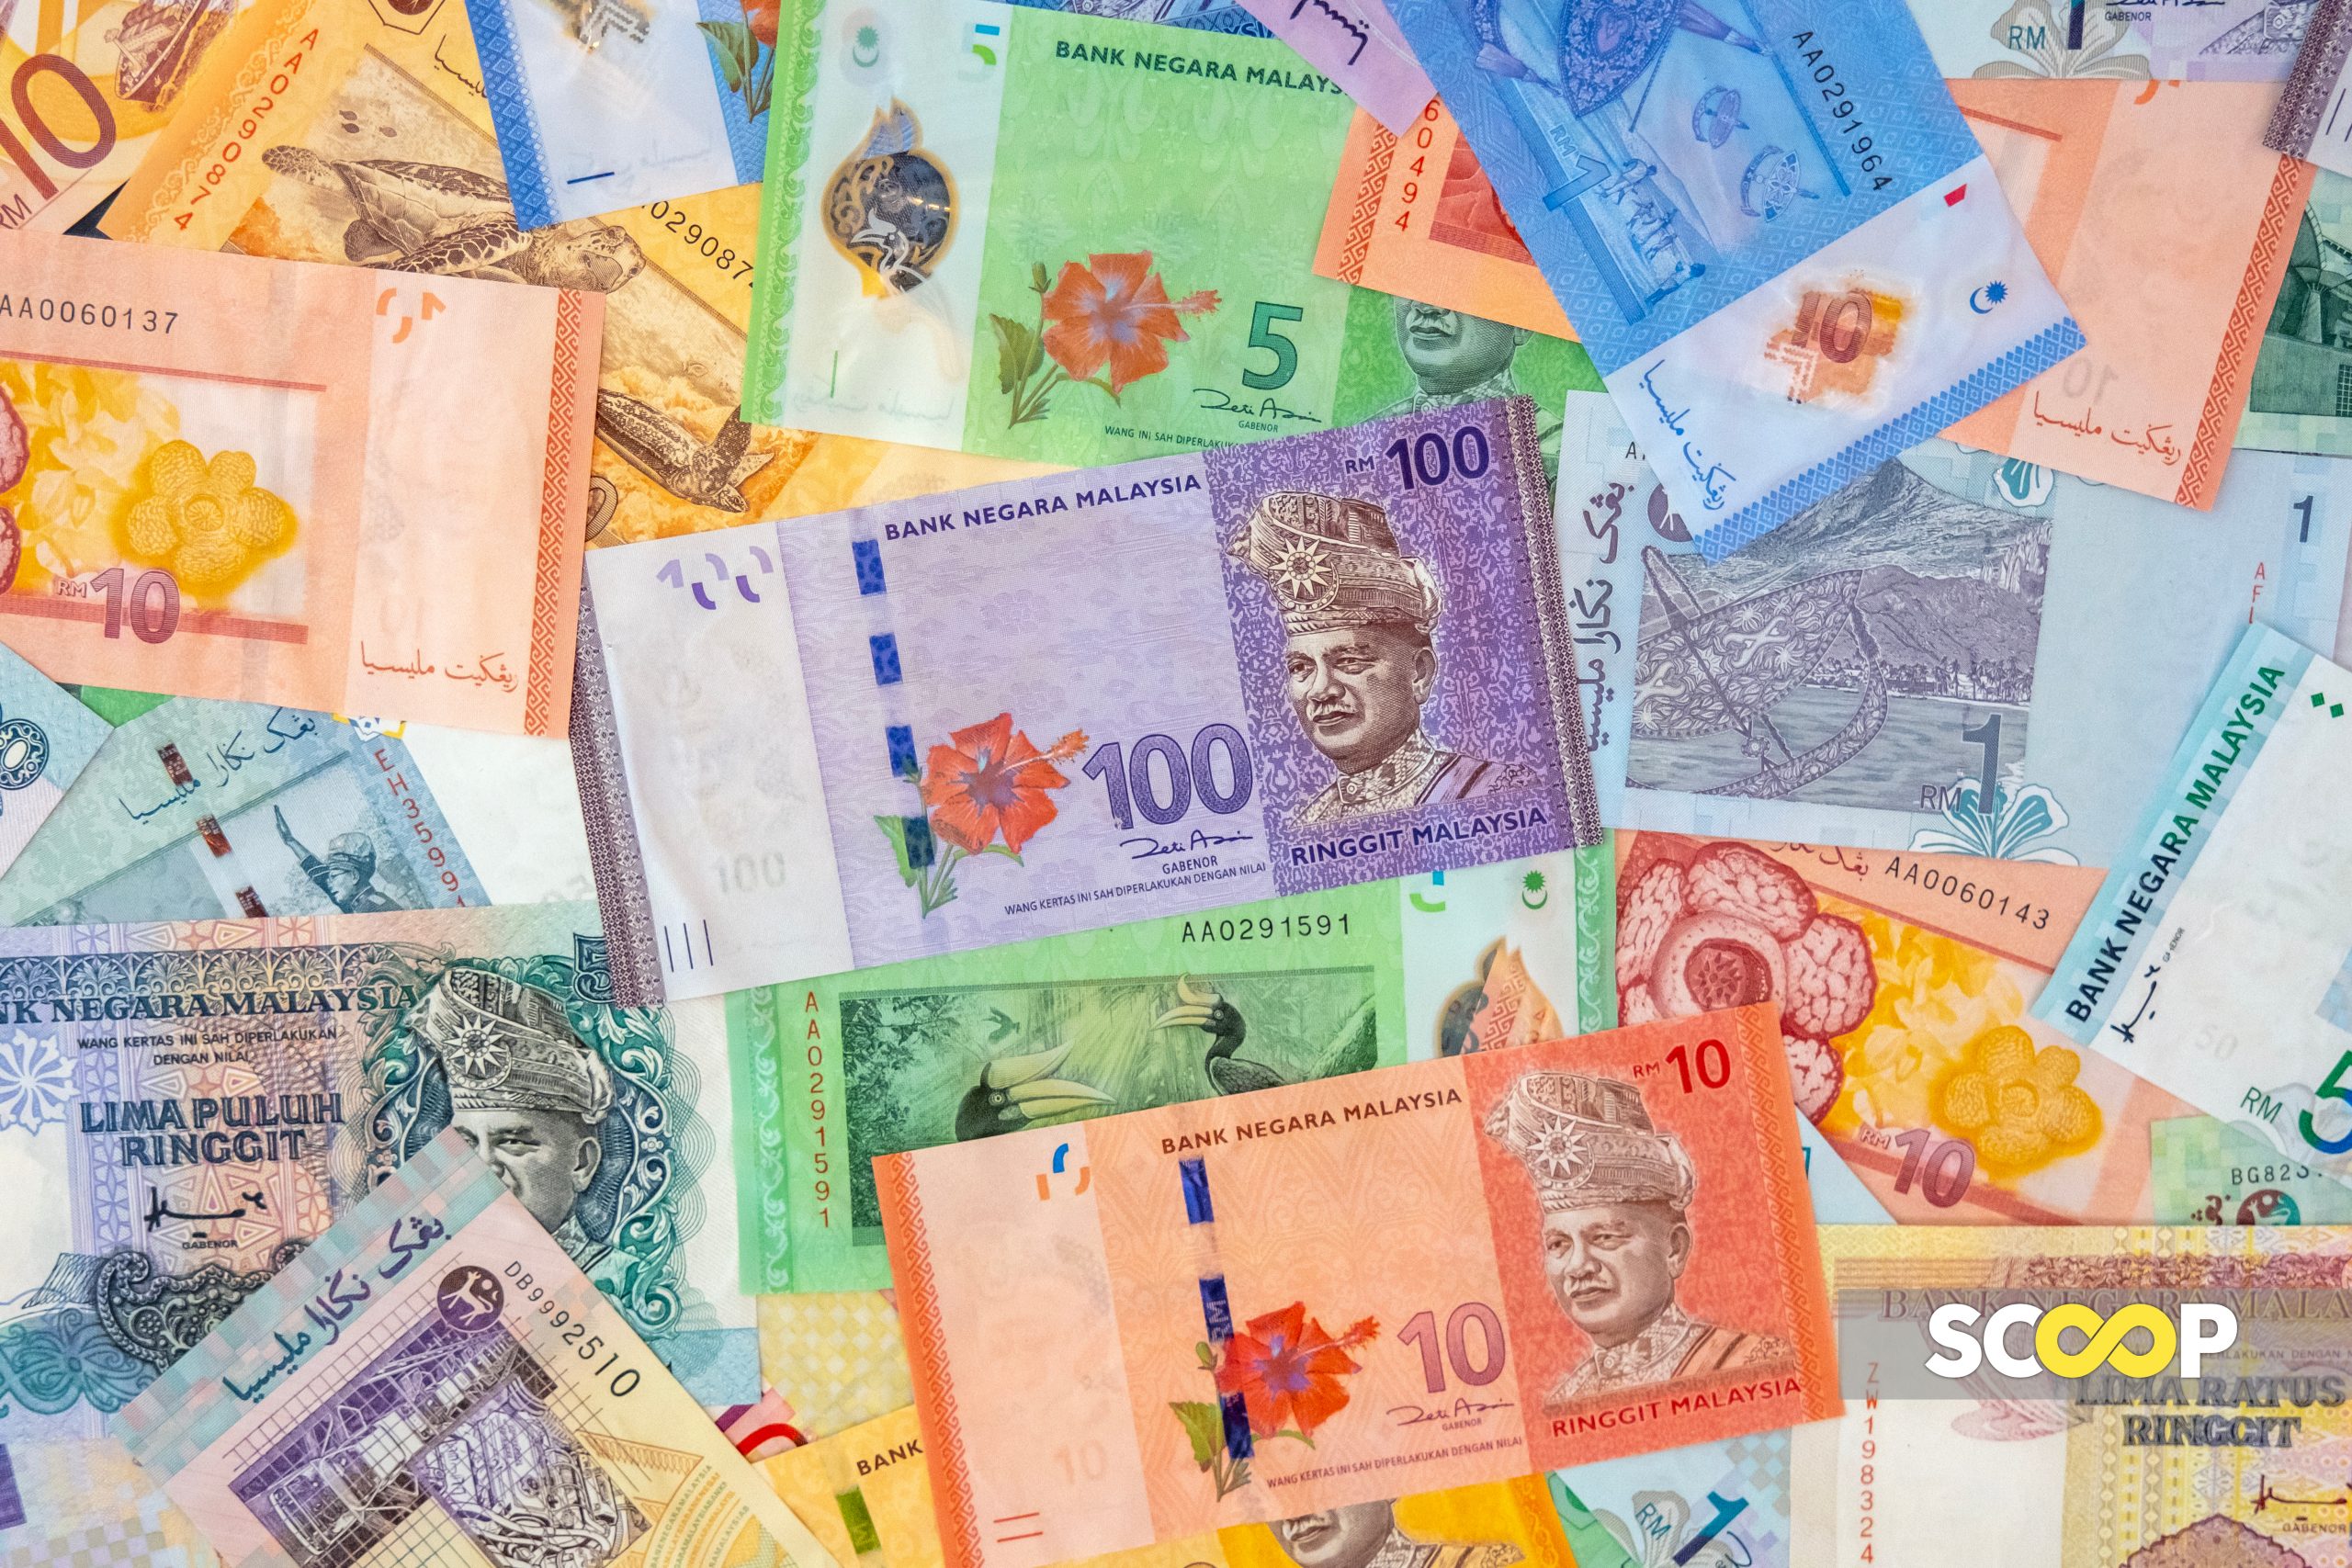 Sikap tidak endah pengurusan wang rakyat Malaysia membimbangkan: Gabenor BNM